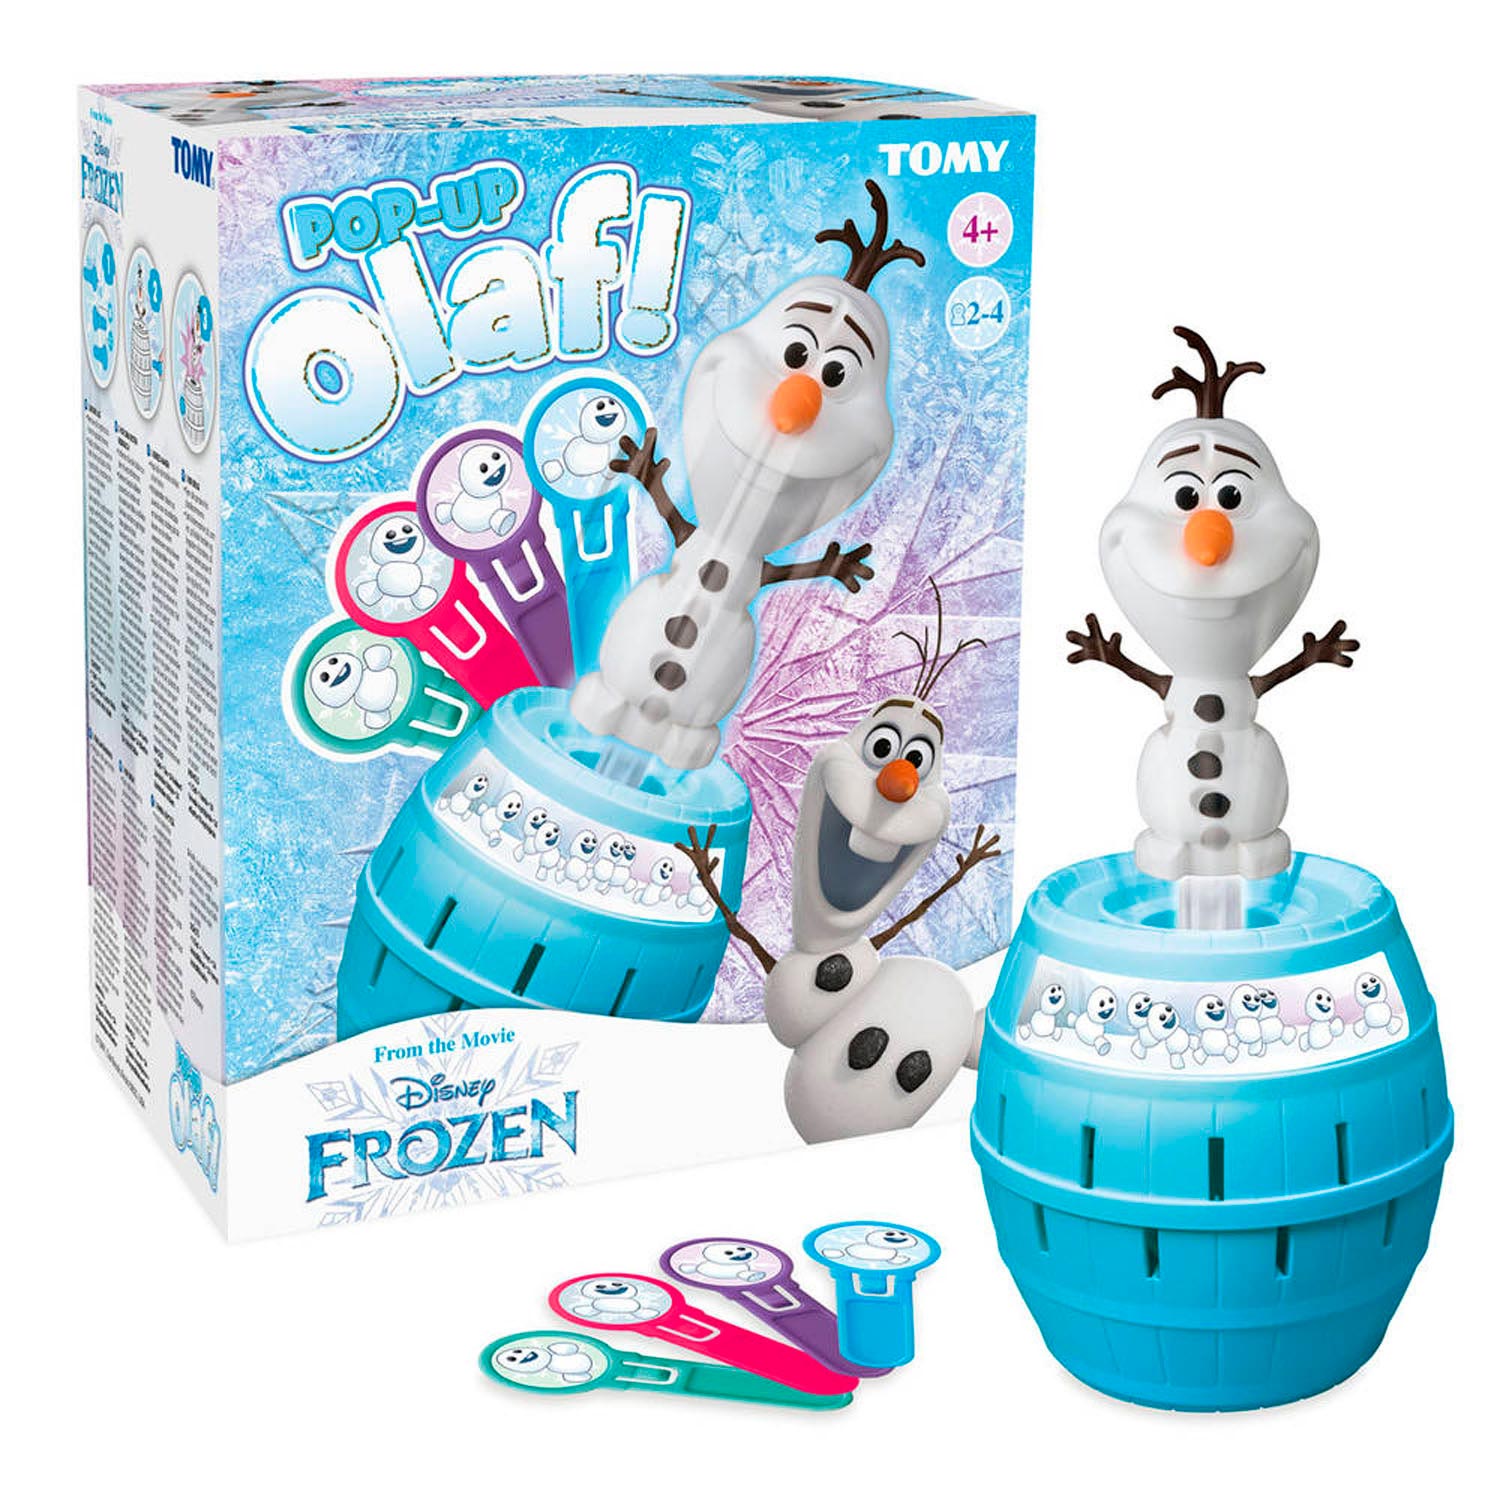 Spel Frozen 2 Pop Up kopen? | Lobbes